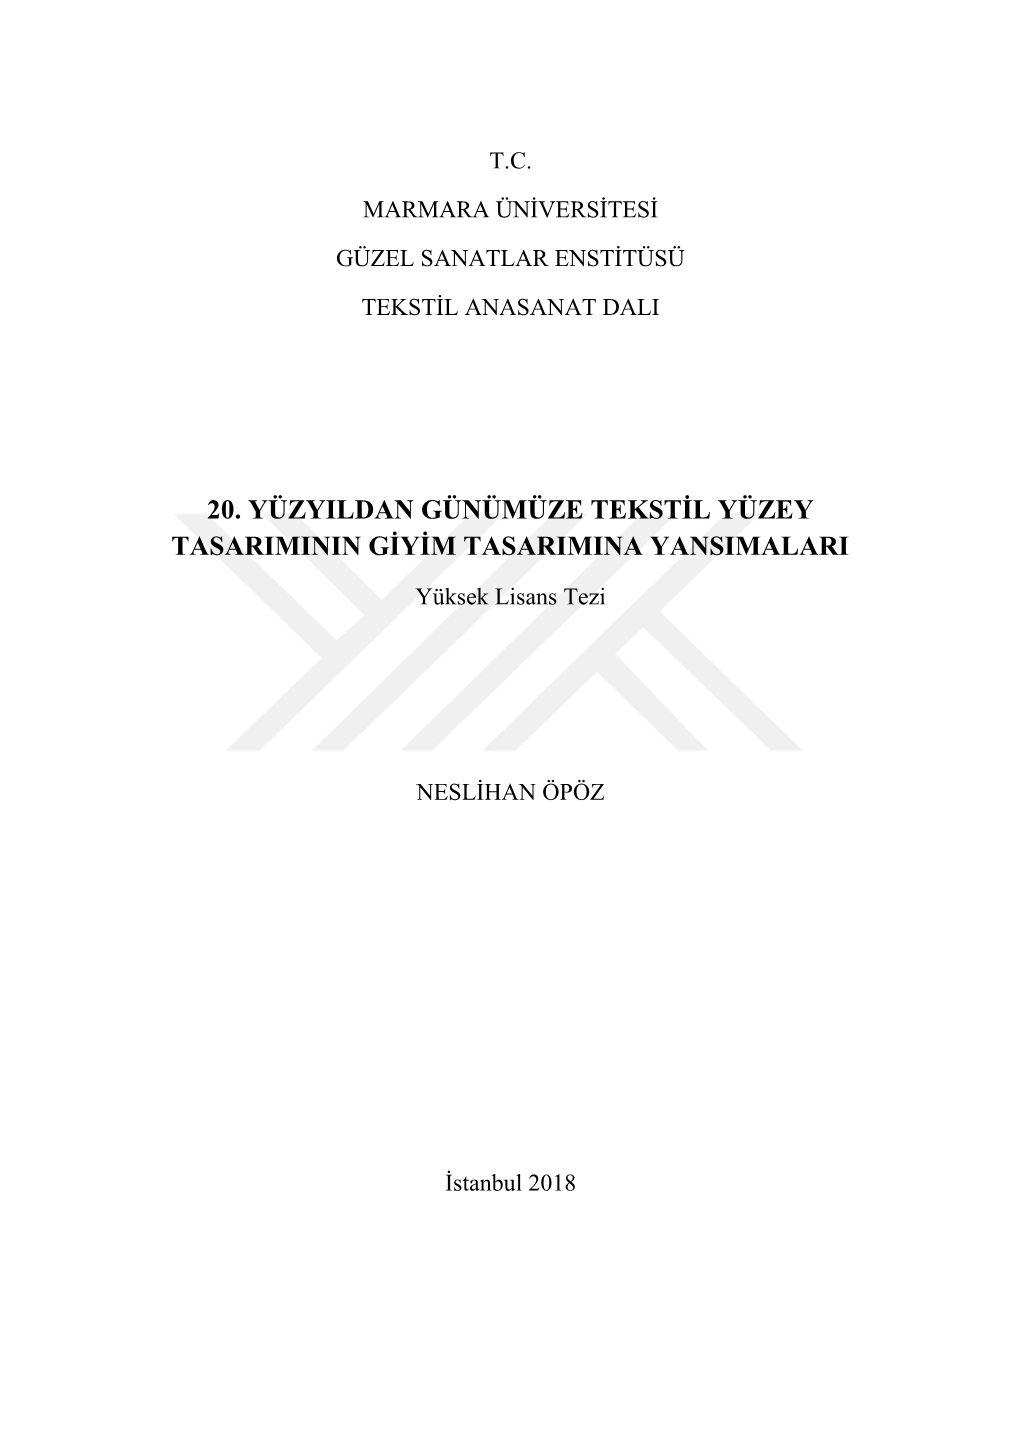 20. Yüzyildan Günümüze Tekstġl Yüzey Tasariminin Gġyġm Tasarimina Yansimalari